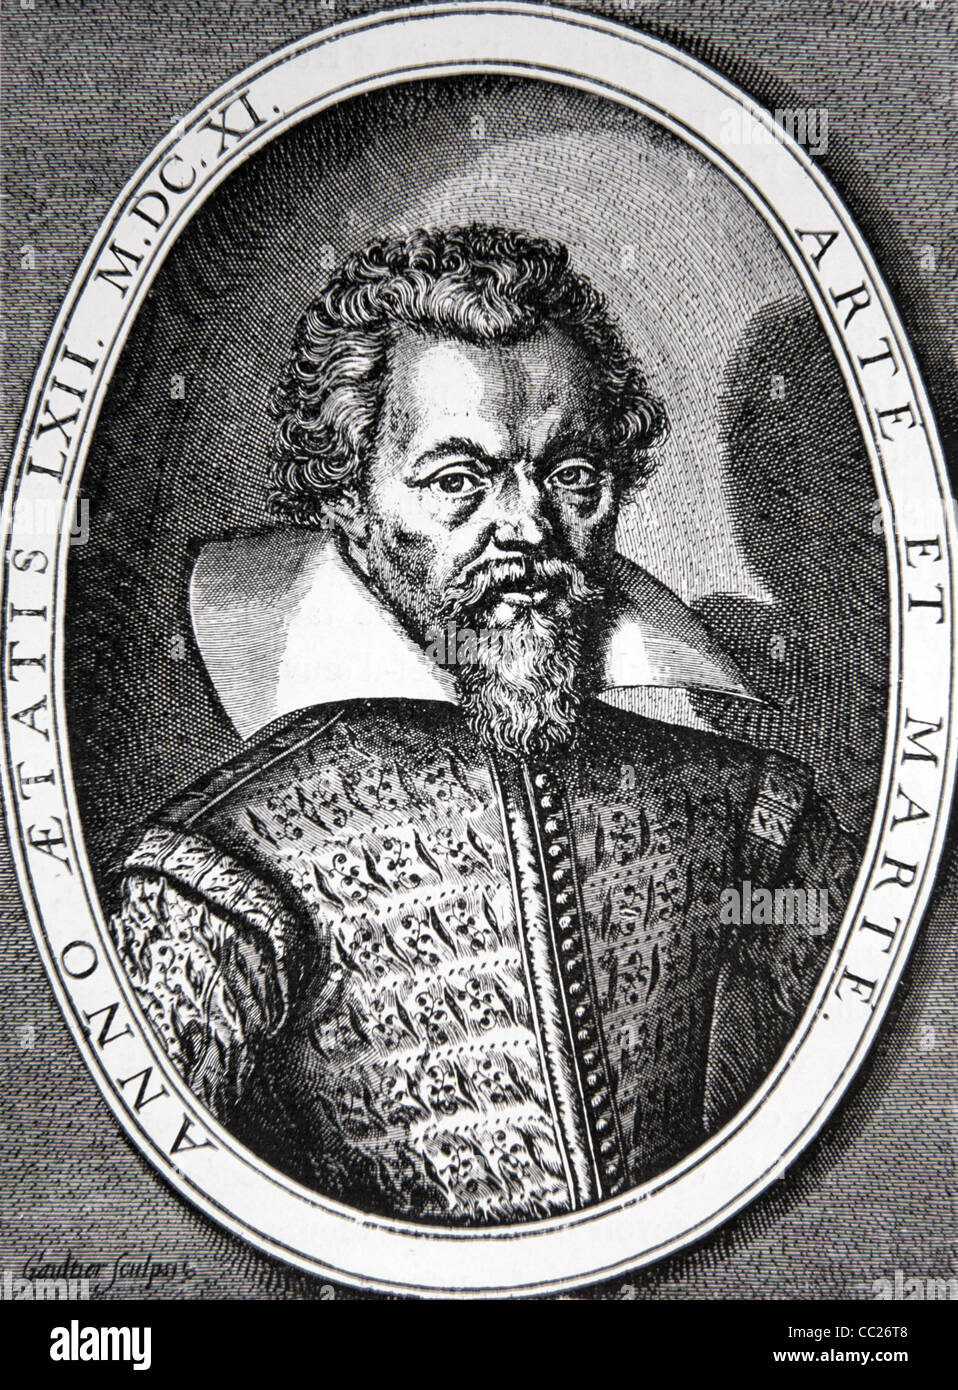 Porträt von Philippe de Mornay, Du-Plessis-Mornay oder Mornay du Plessis (1549-1623) französischer Hugenot-Theoretiker & Monarchomach. Gravur 1611. Stockfoto